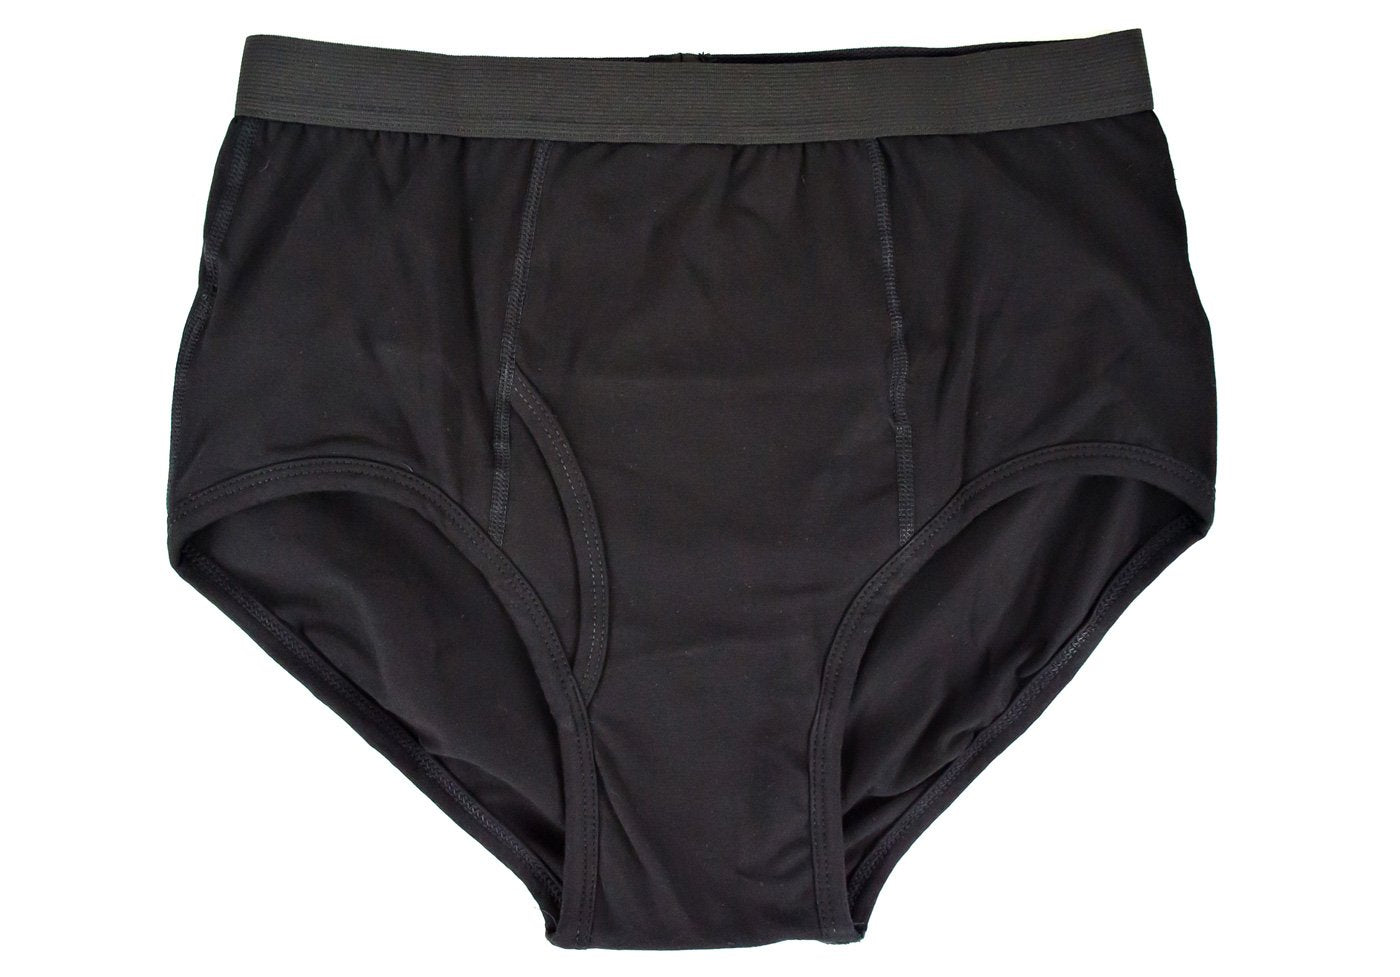 Ostomy underwear